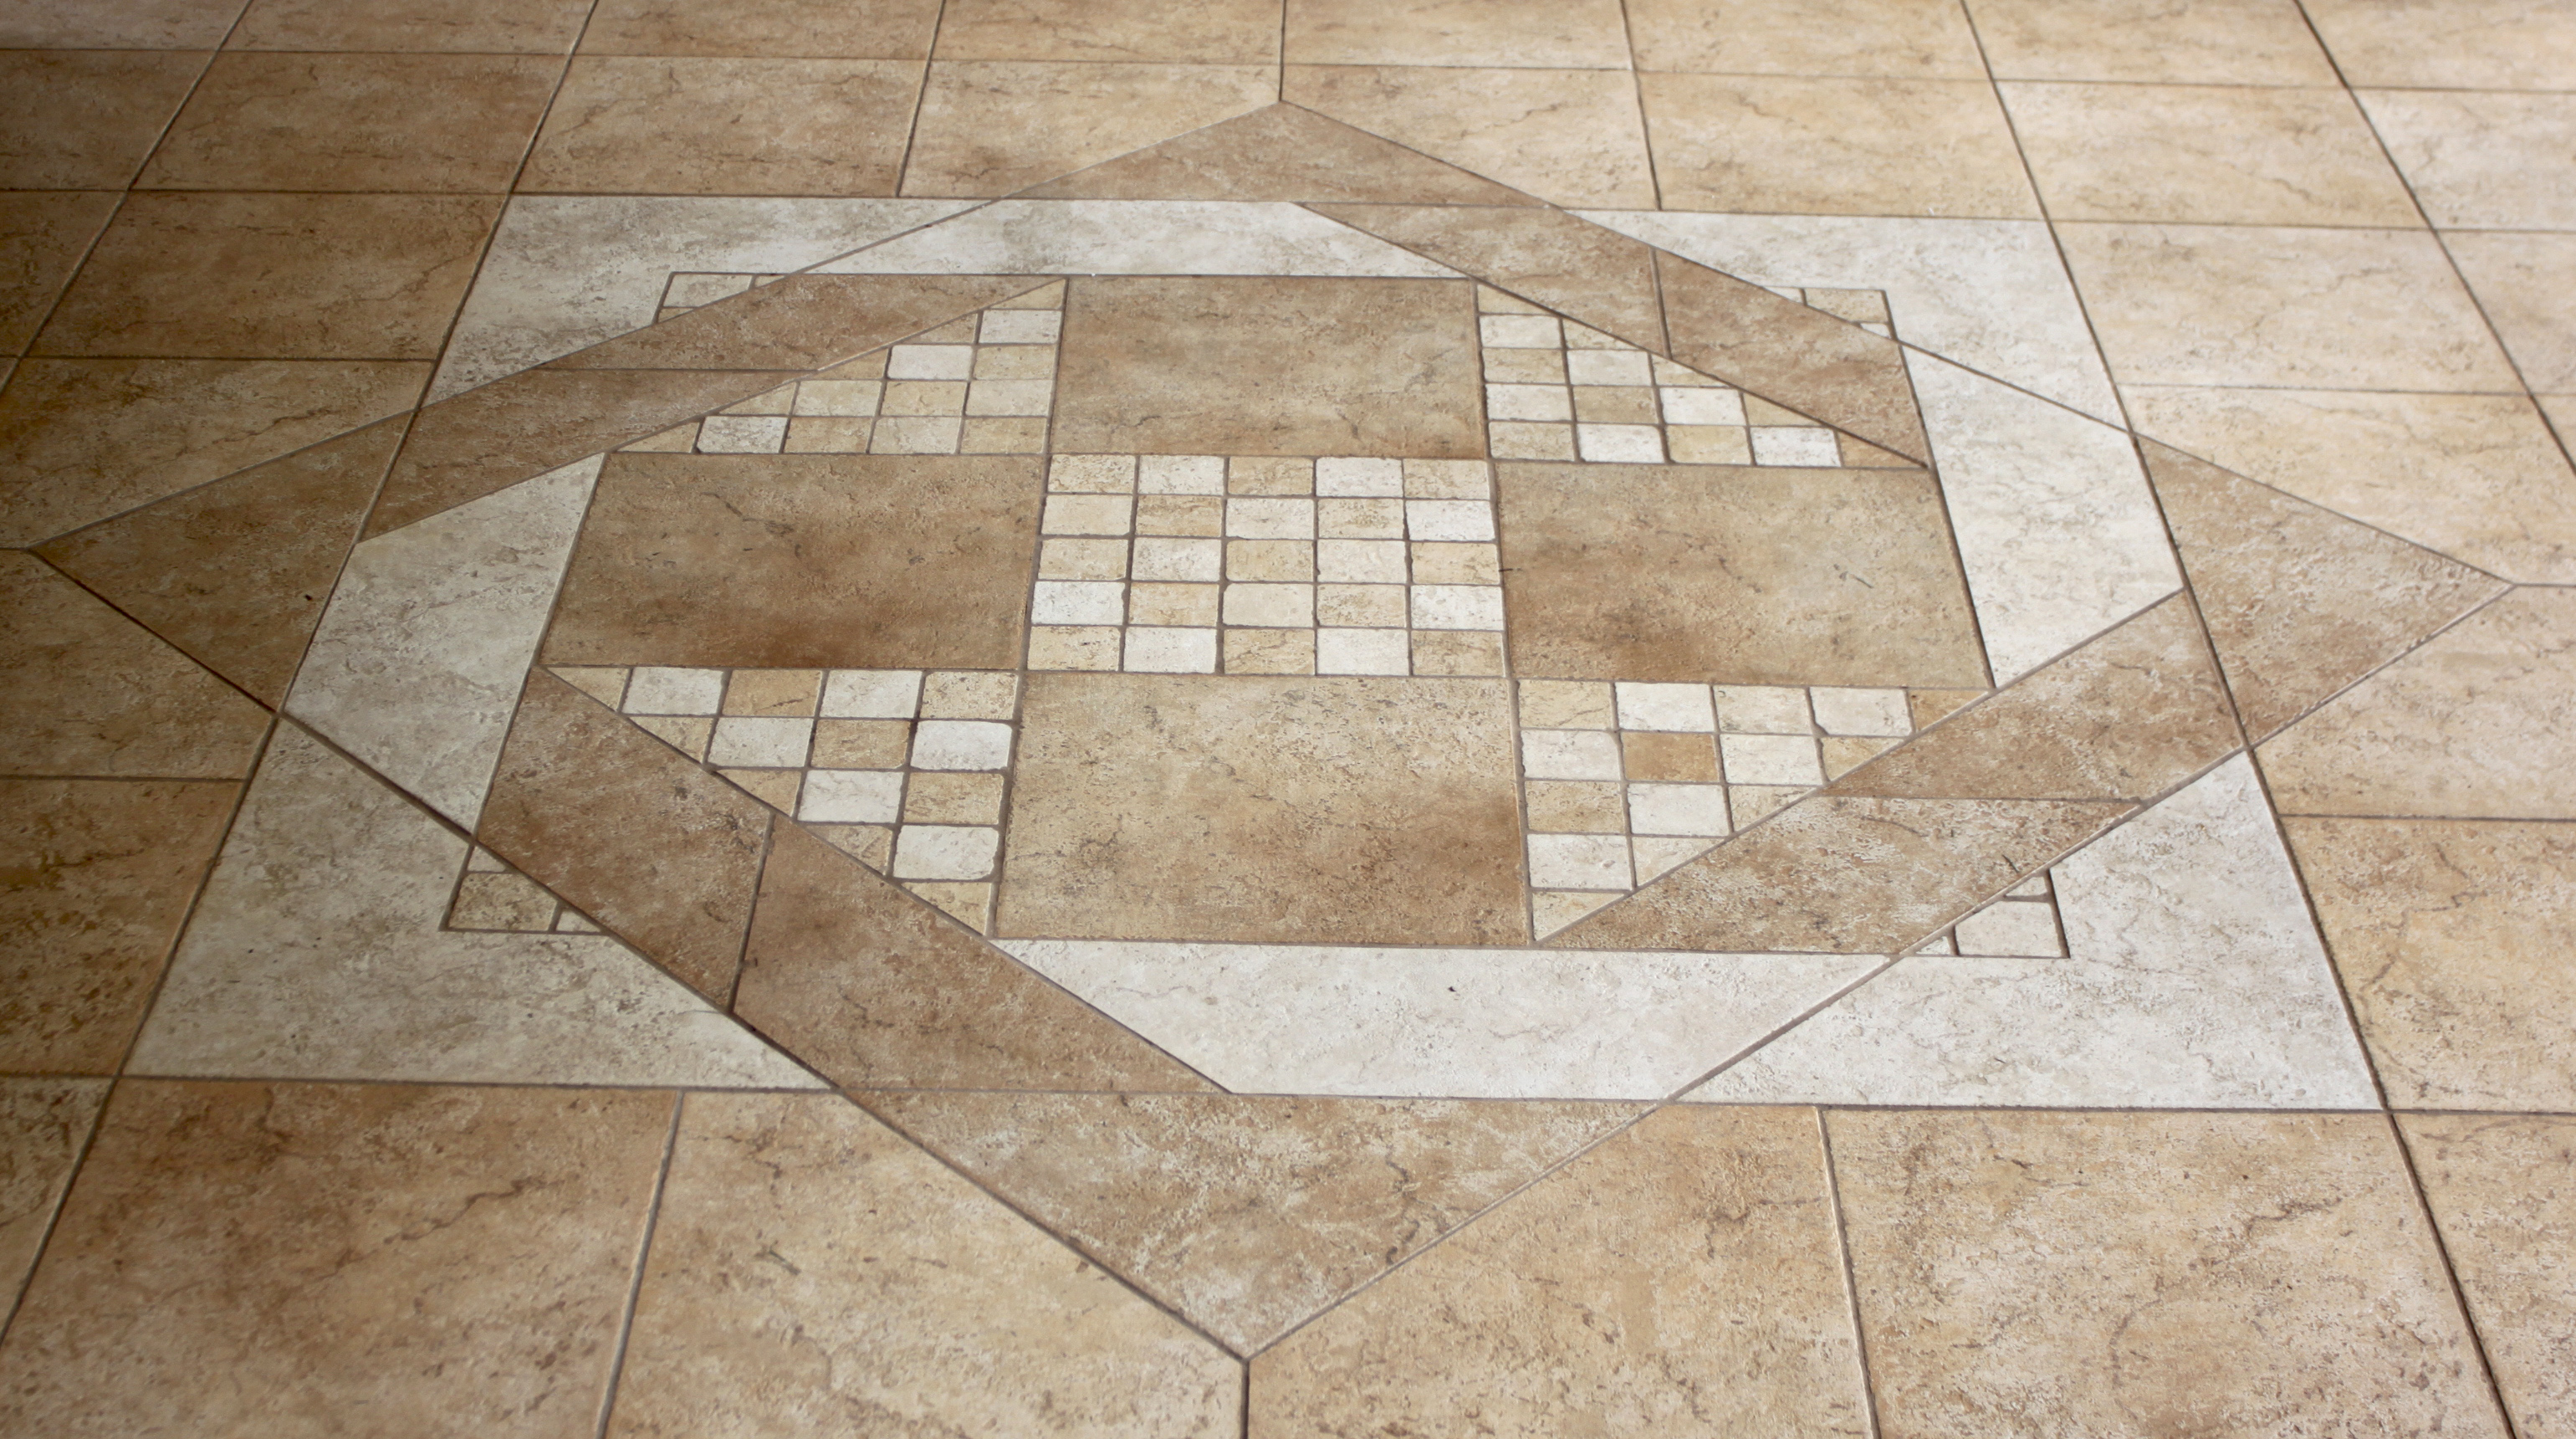 k-pretty-how-to-install-tile-vinyl-flooring-how-to-install-tile-flooring-in-bathroom-how-to-install-tile-flooring-how-to-install-tile-flooring-over-concrete-how-to-install-tile-flooring-in-kitche